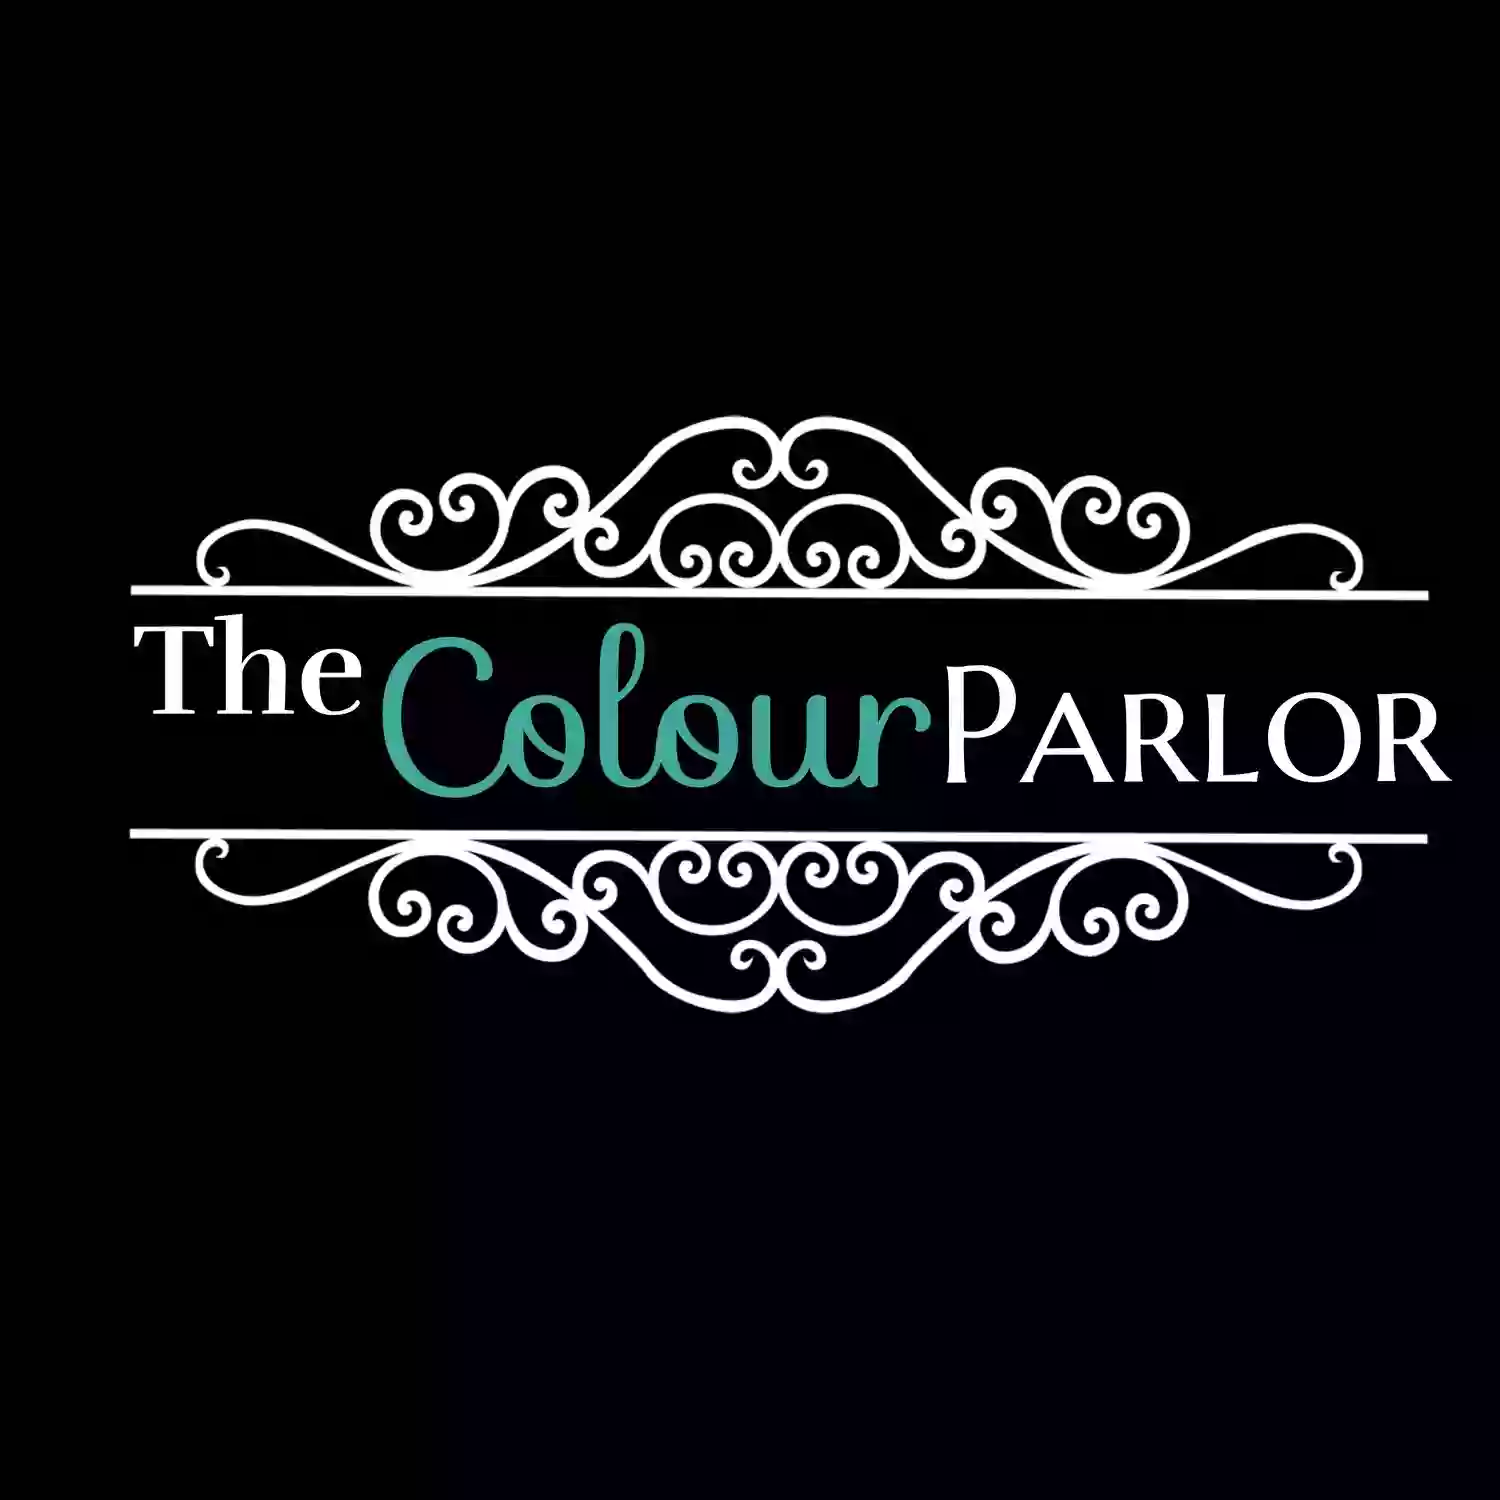 The Colour Parlor